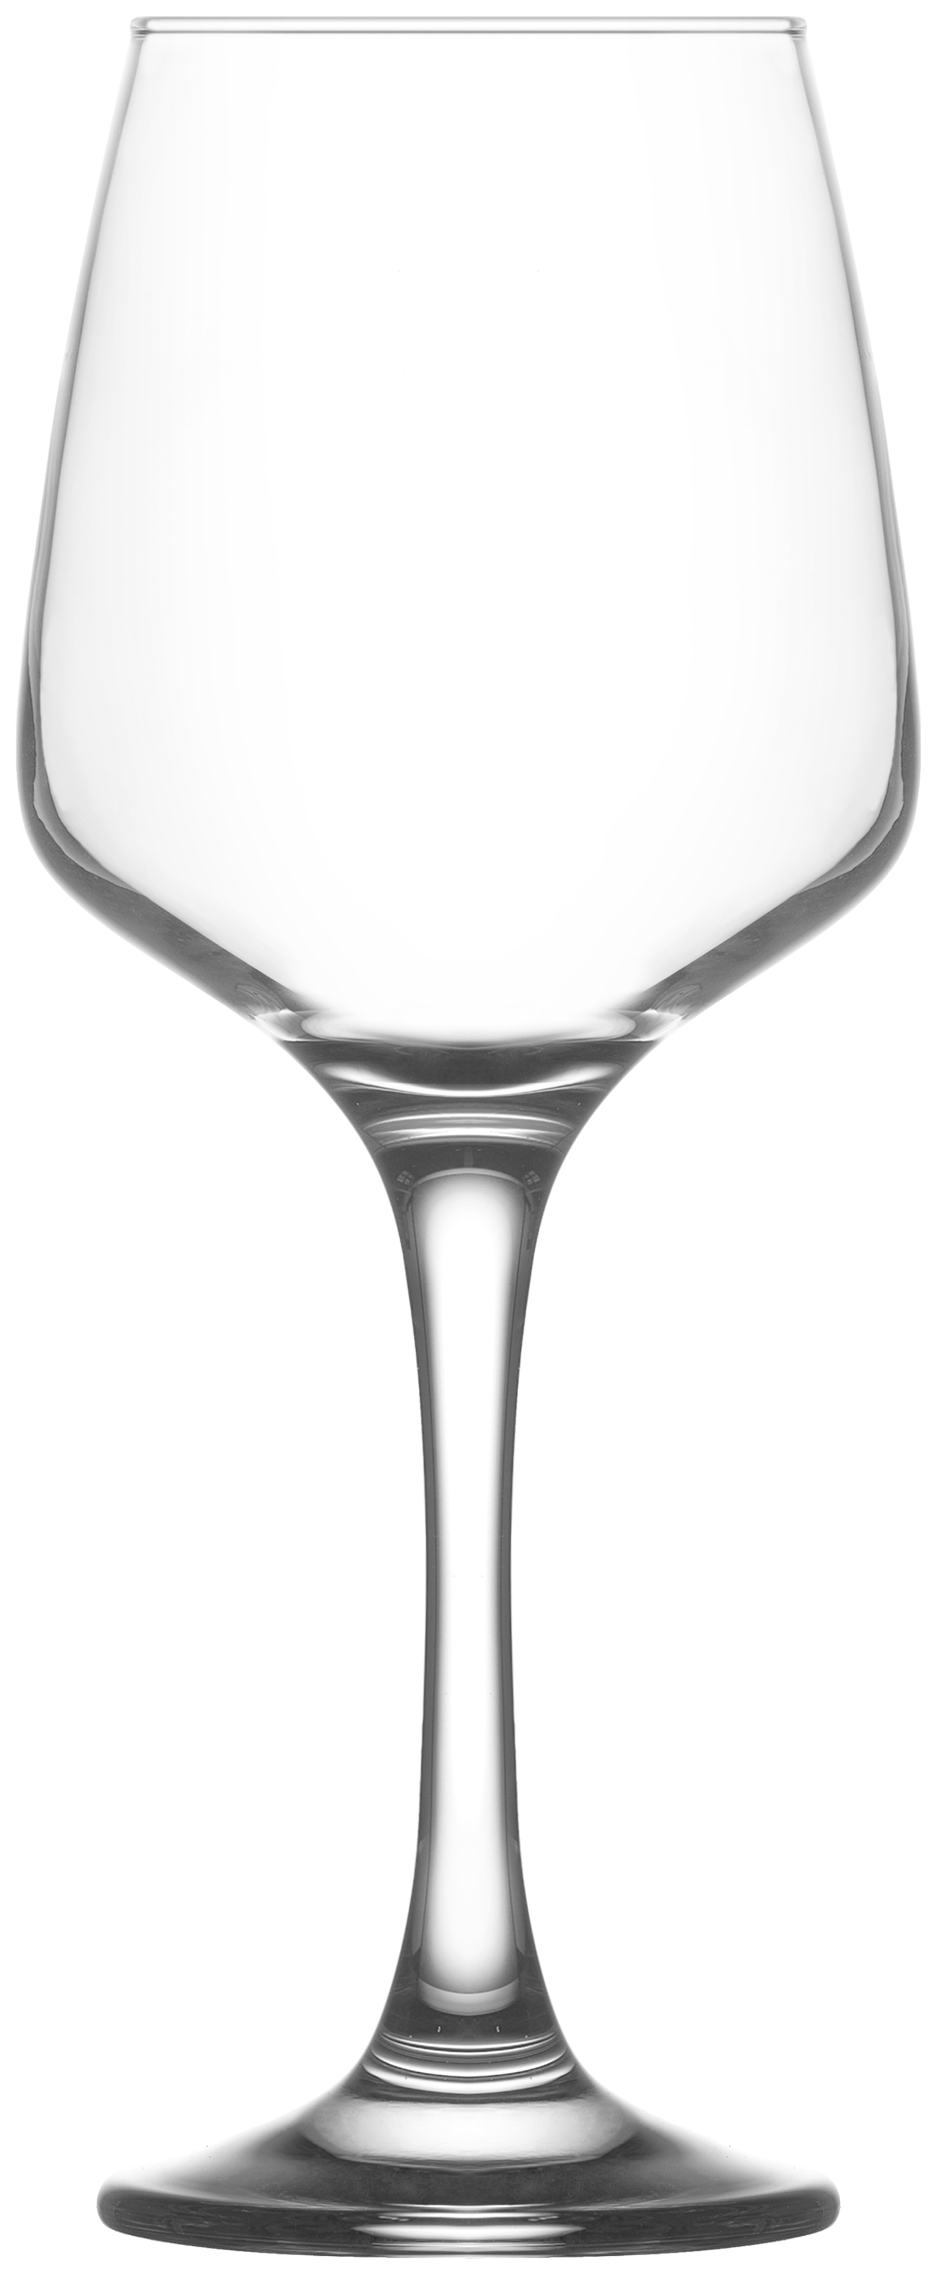 Ποτήρι Κρασιού Σετ 6τμχ Γυάλινο LAV 330ml LVLAL56933F (Υλικό: Γυαλί, Χρώμα: Διάφανο , Μέγεθος: Κολωνάτο) – LAV – LVLAL56933F